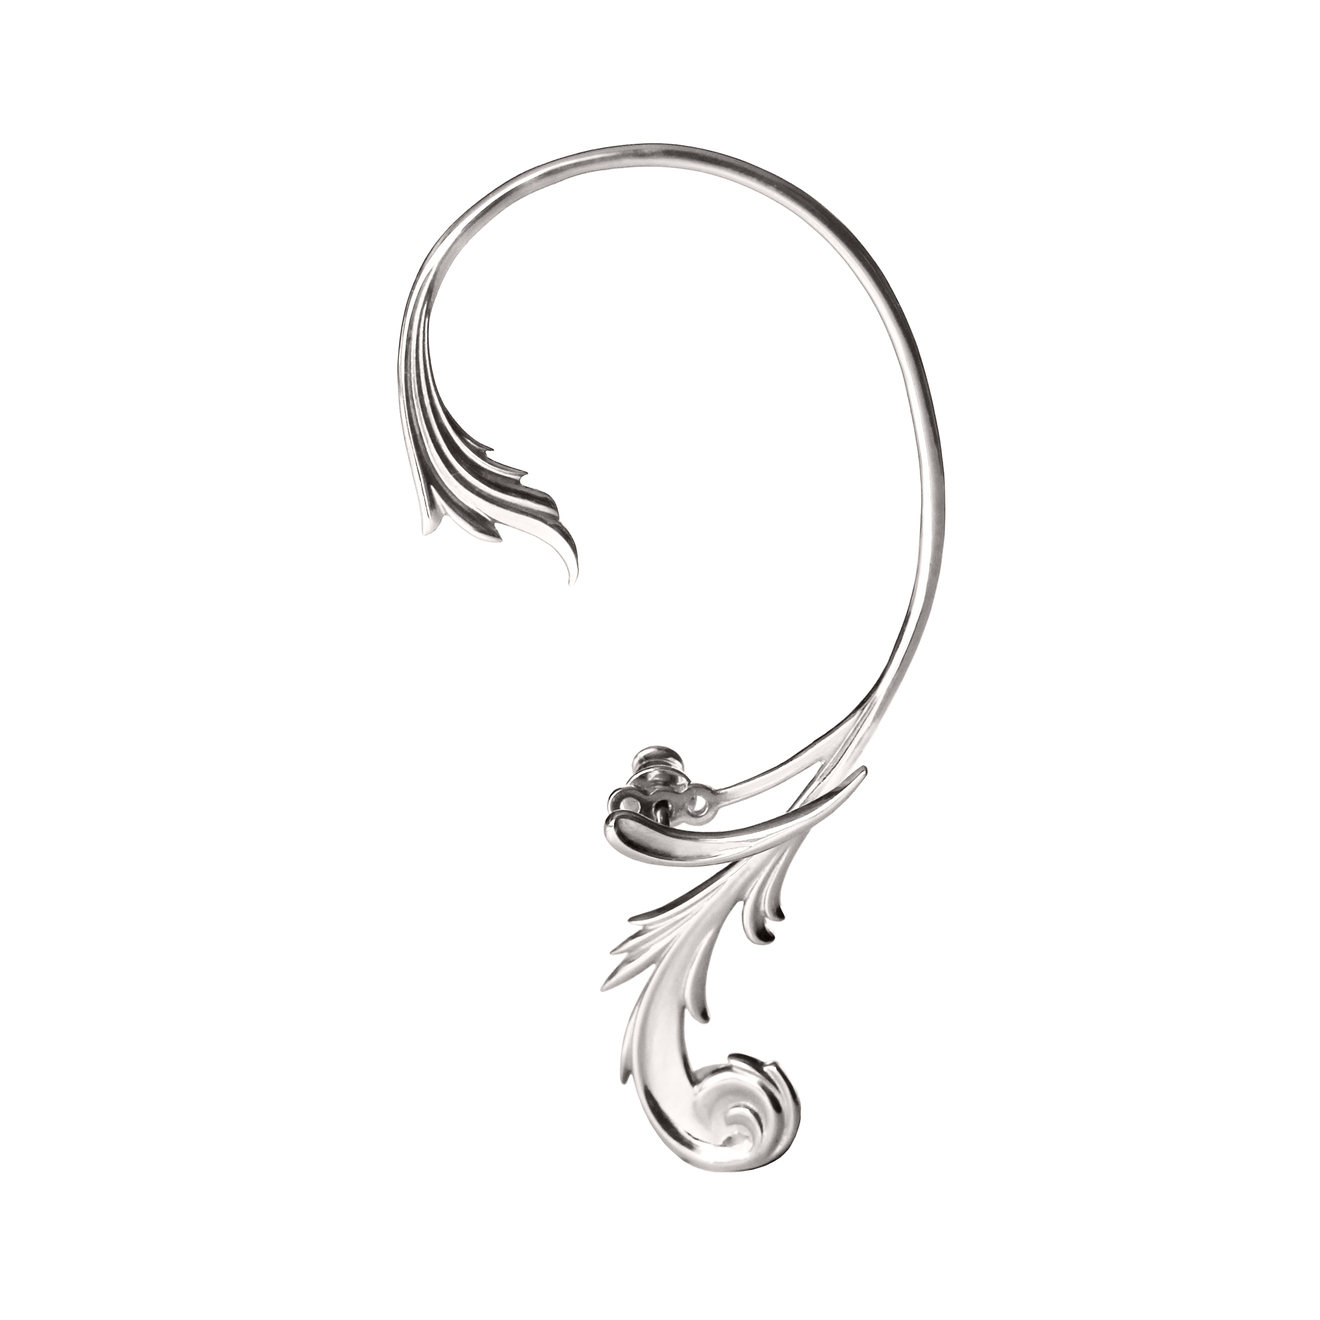 LUTA Jewelry Кафф из серебра на левое ухо в барочном стиле luta jewelry серьги в барочном стиле из серебра